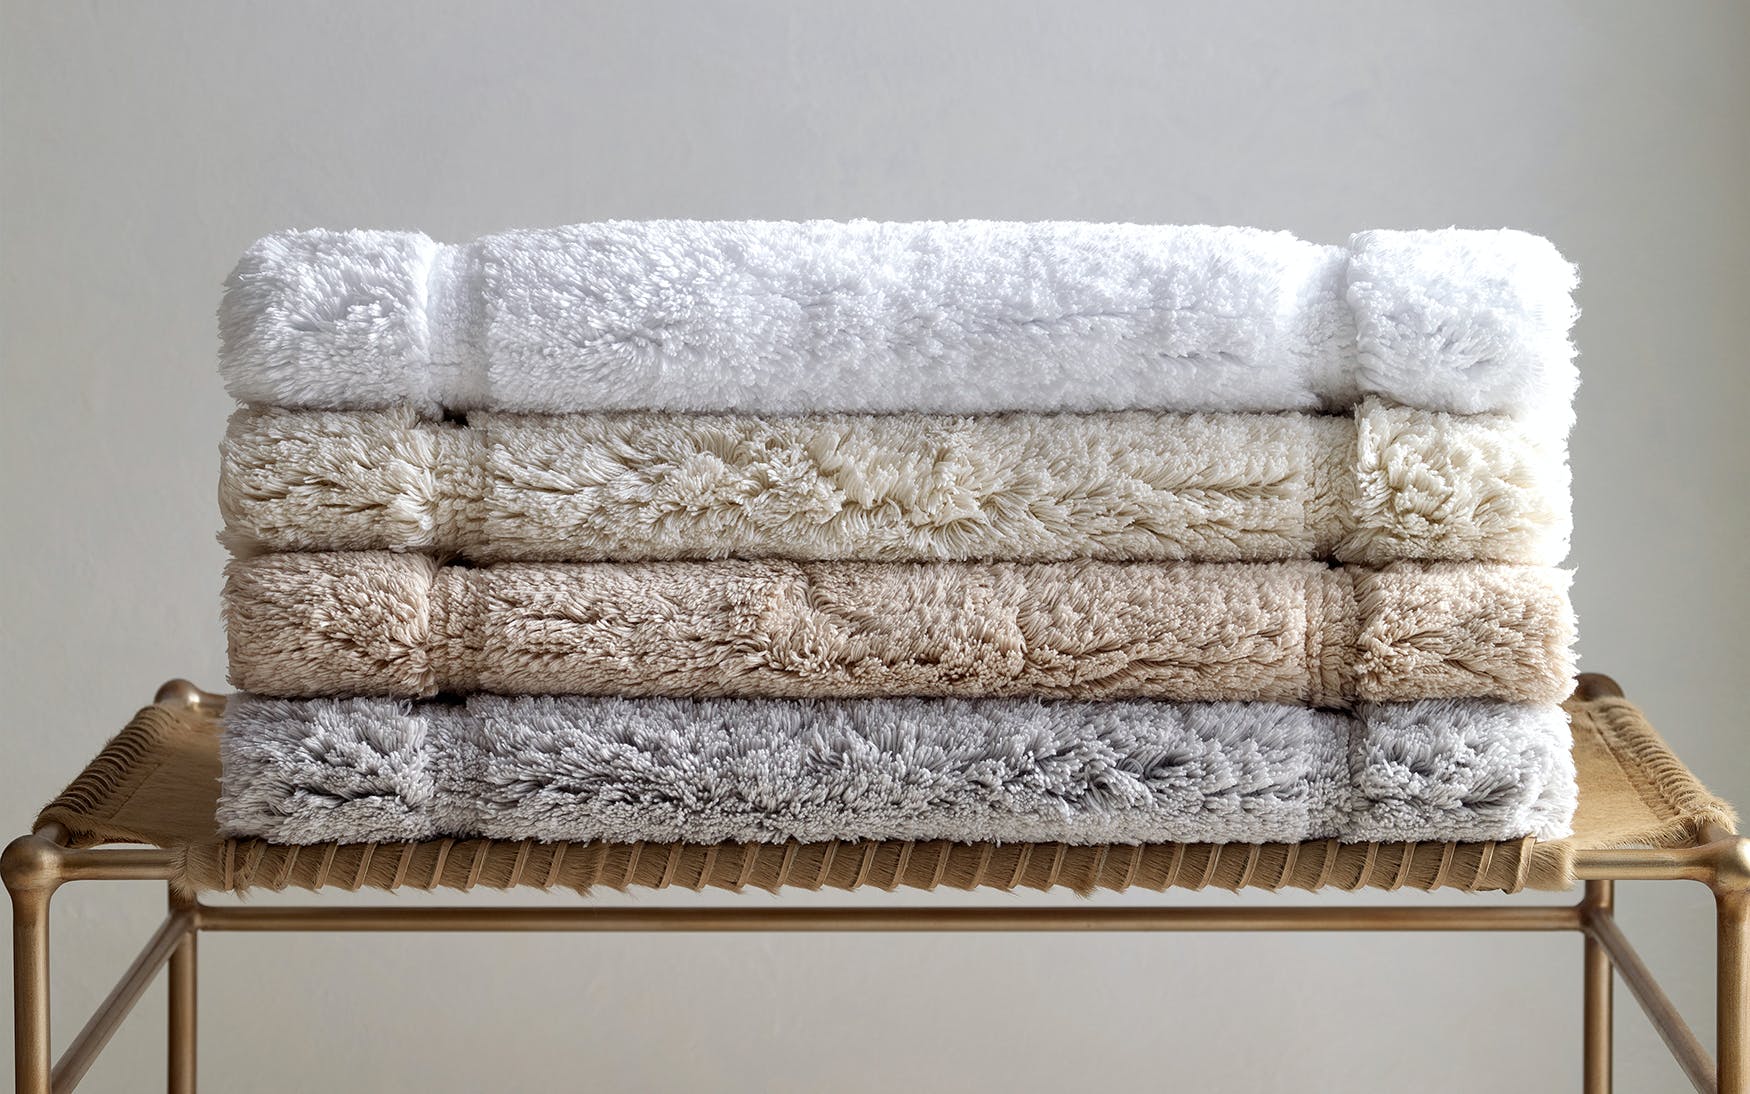 Enzo Hand Towel 18 x 32 - Jabbour Linens